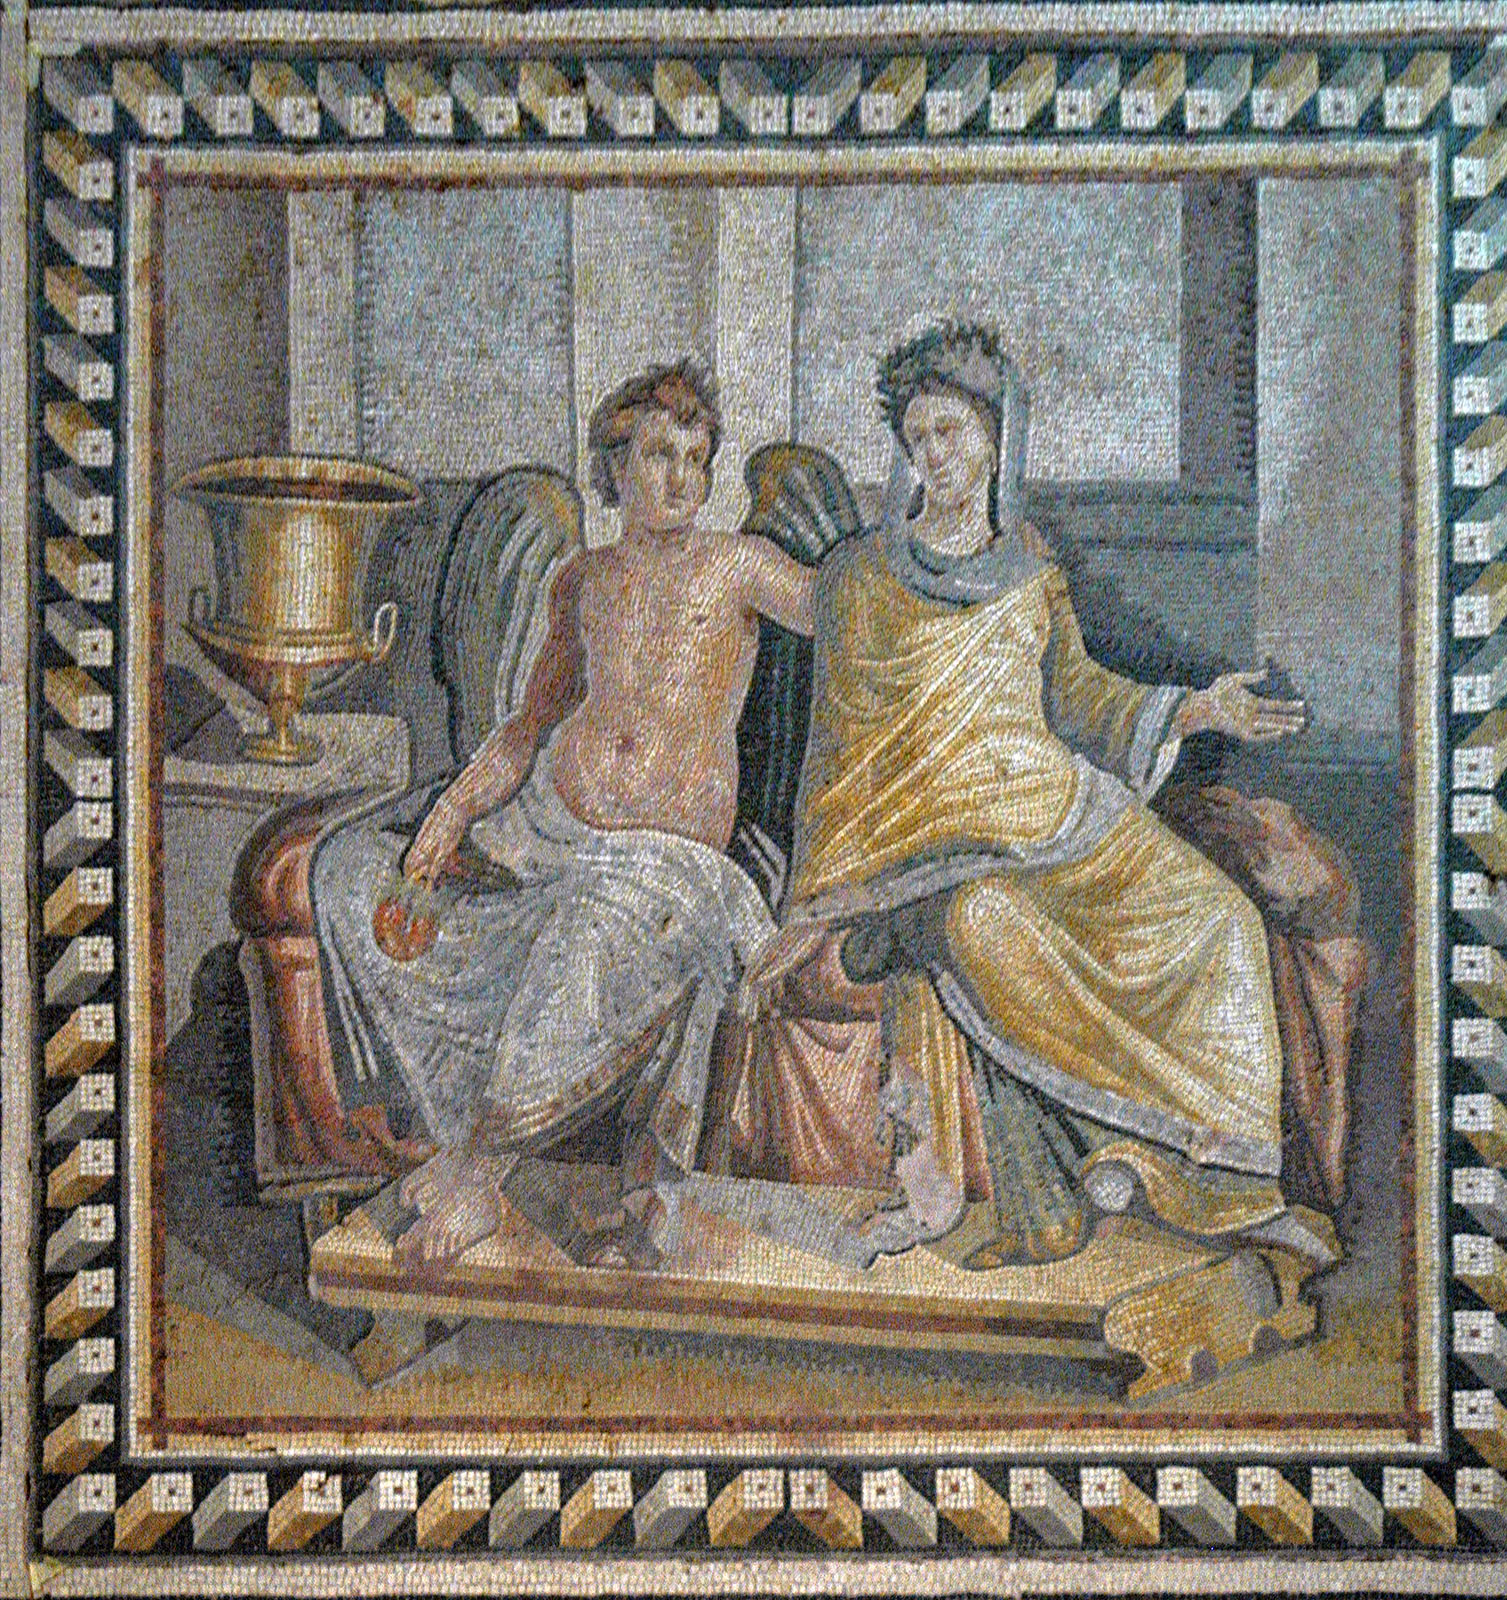 1: Apuleius- Cupid and Psyche